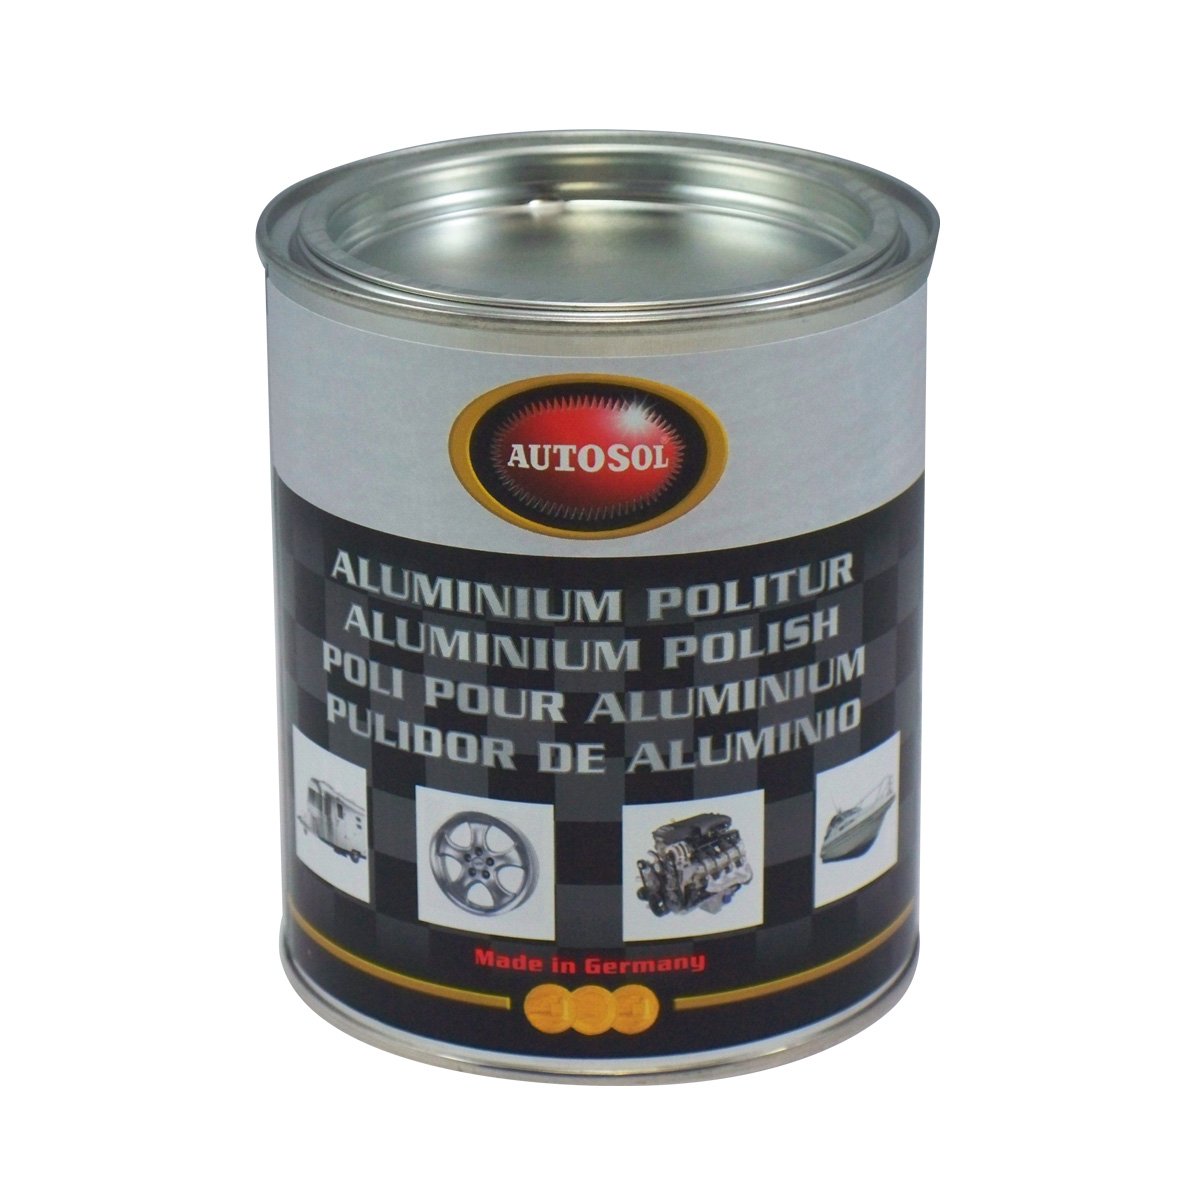 Autosol 01 001831 Aluminium Politur, 750 ml, Schwarz